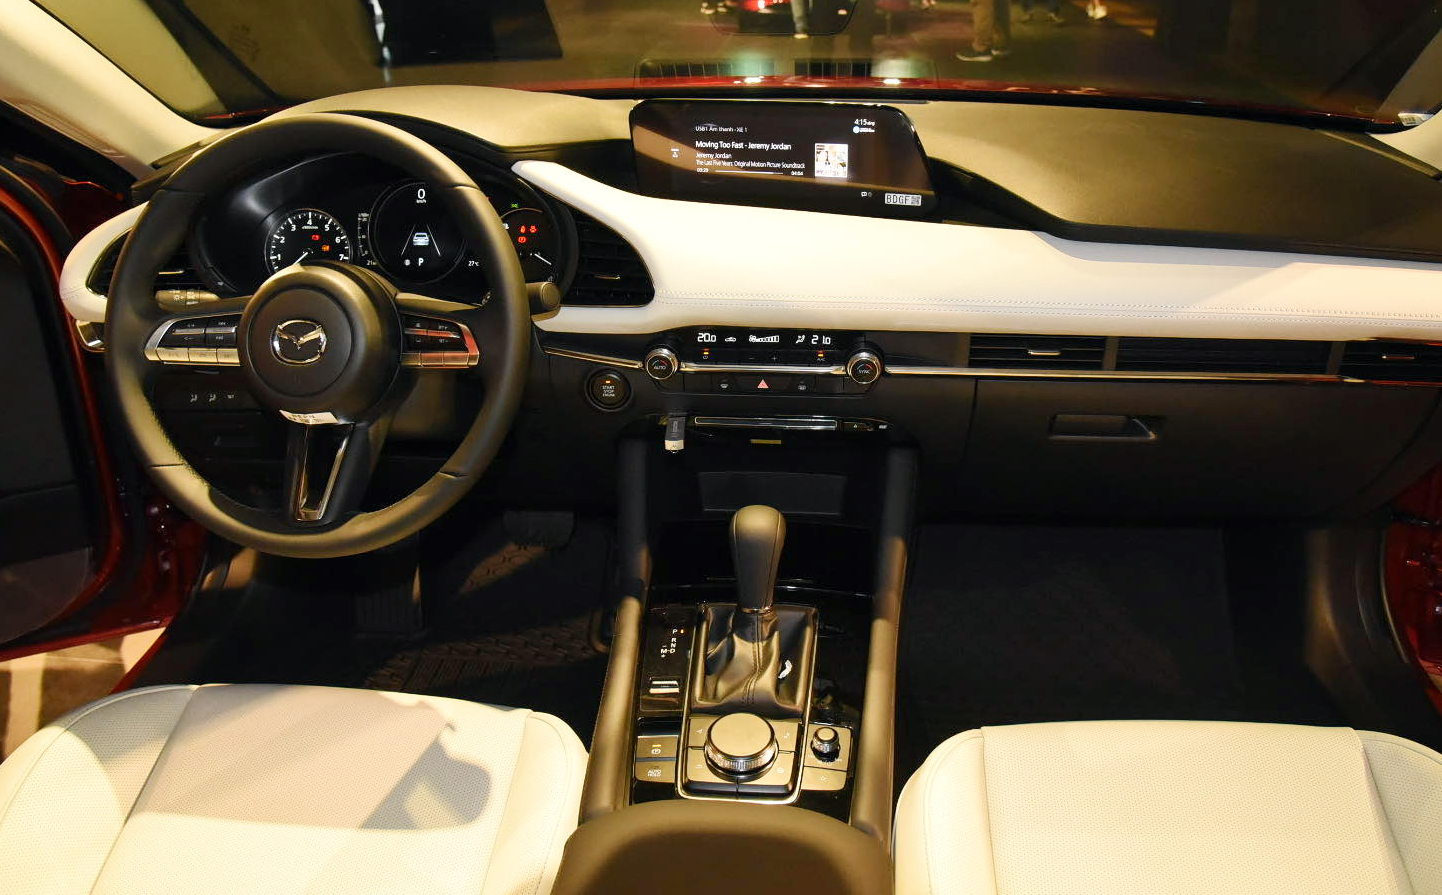 Mazda3 2020 chuẩn bị ra mắt thị trường Việt Nam có gì hấp dẫn?